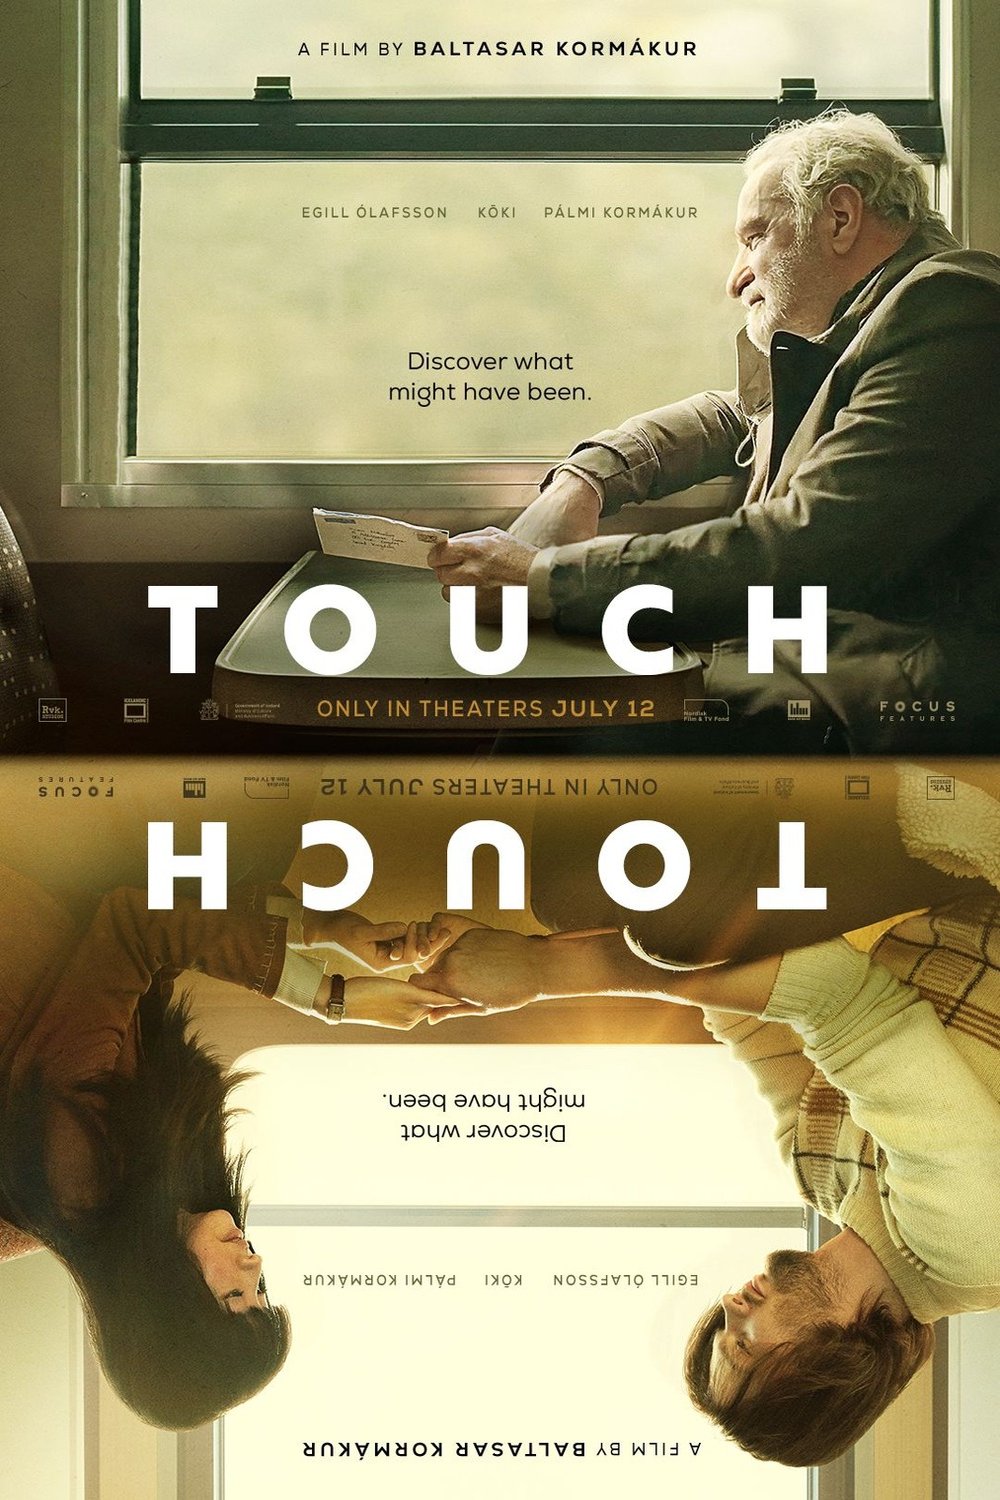 L'affiche du film Touch